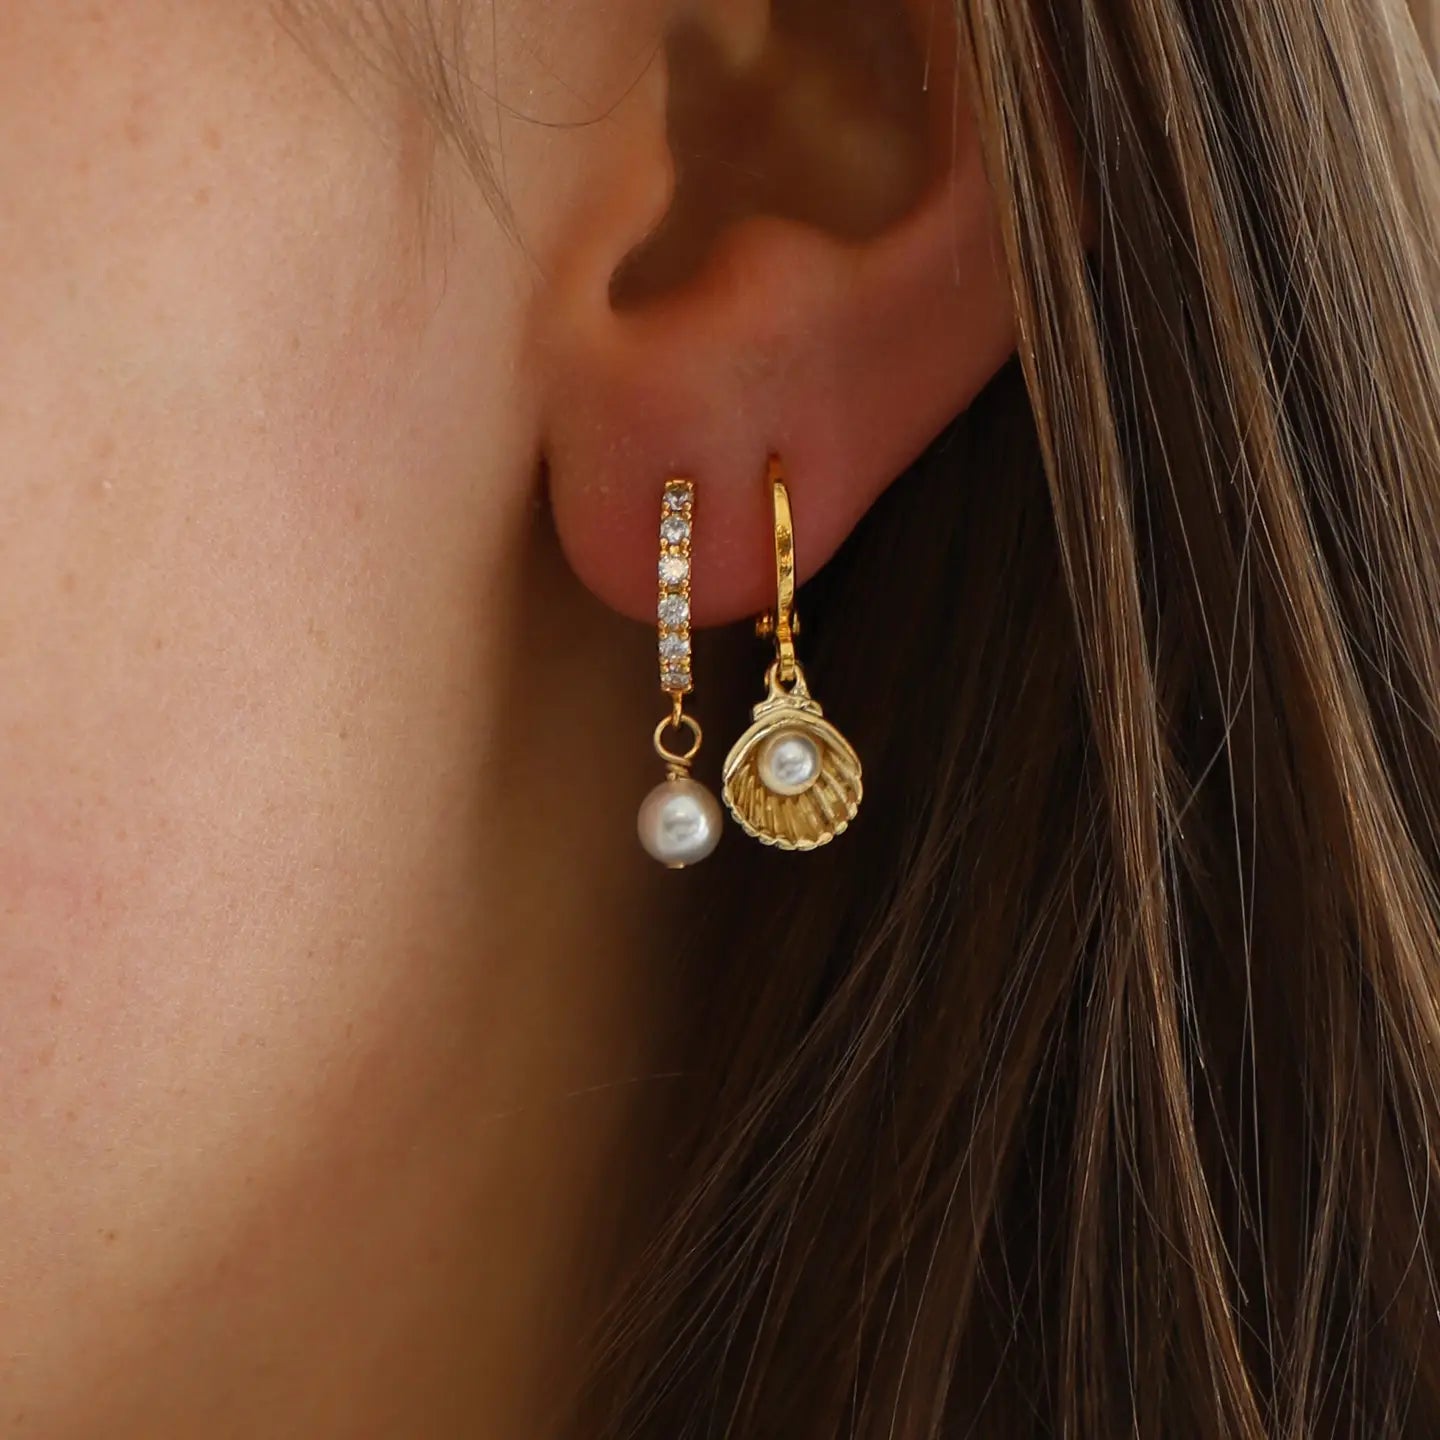 Woman wearing the Shell Huggie Earrings by Katie Waltman Jewelry in her second ear piercing. 